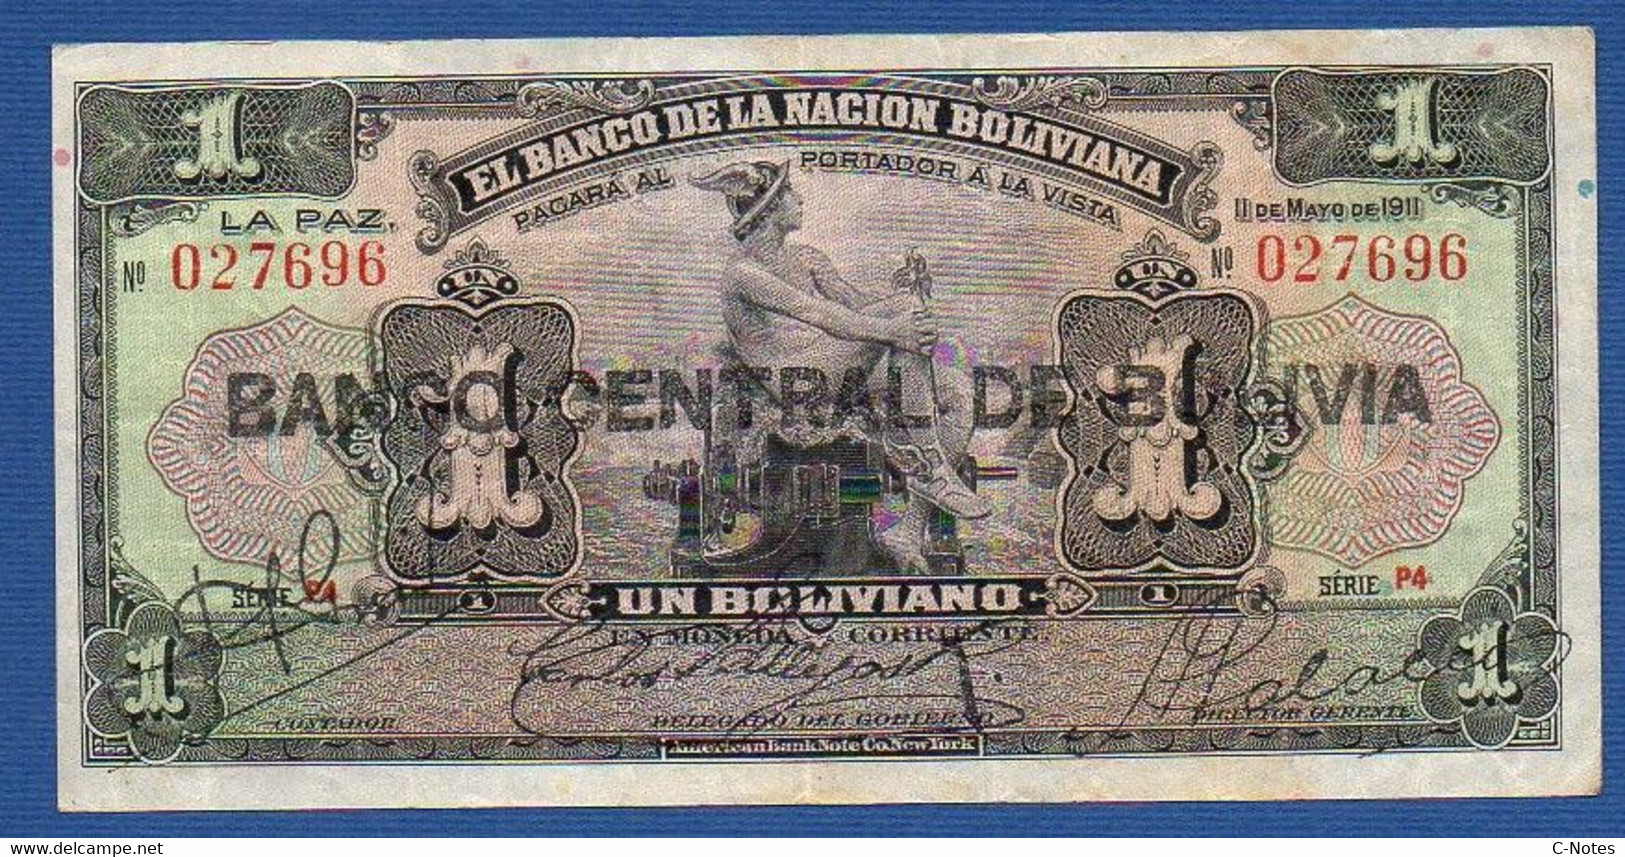 BOLIVIA - P.112 (3) – 1 Boliviano 11.05.1911 (1929) VF, Serie P4 027696 - Bolivie